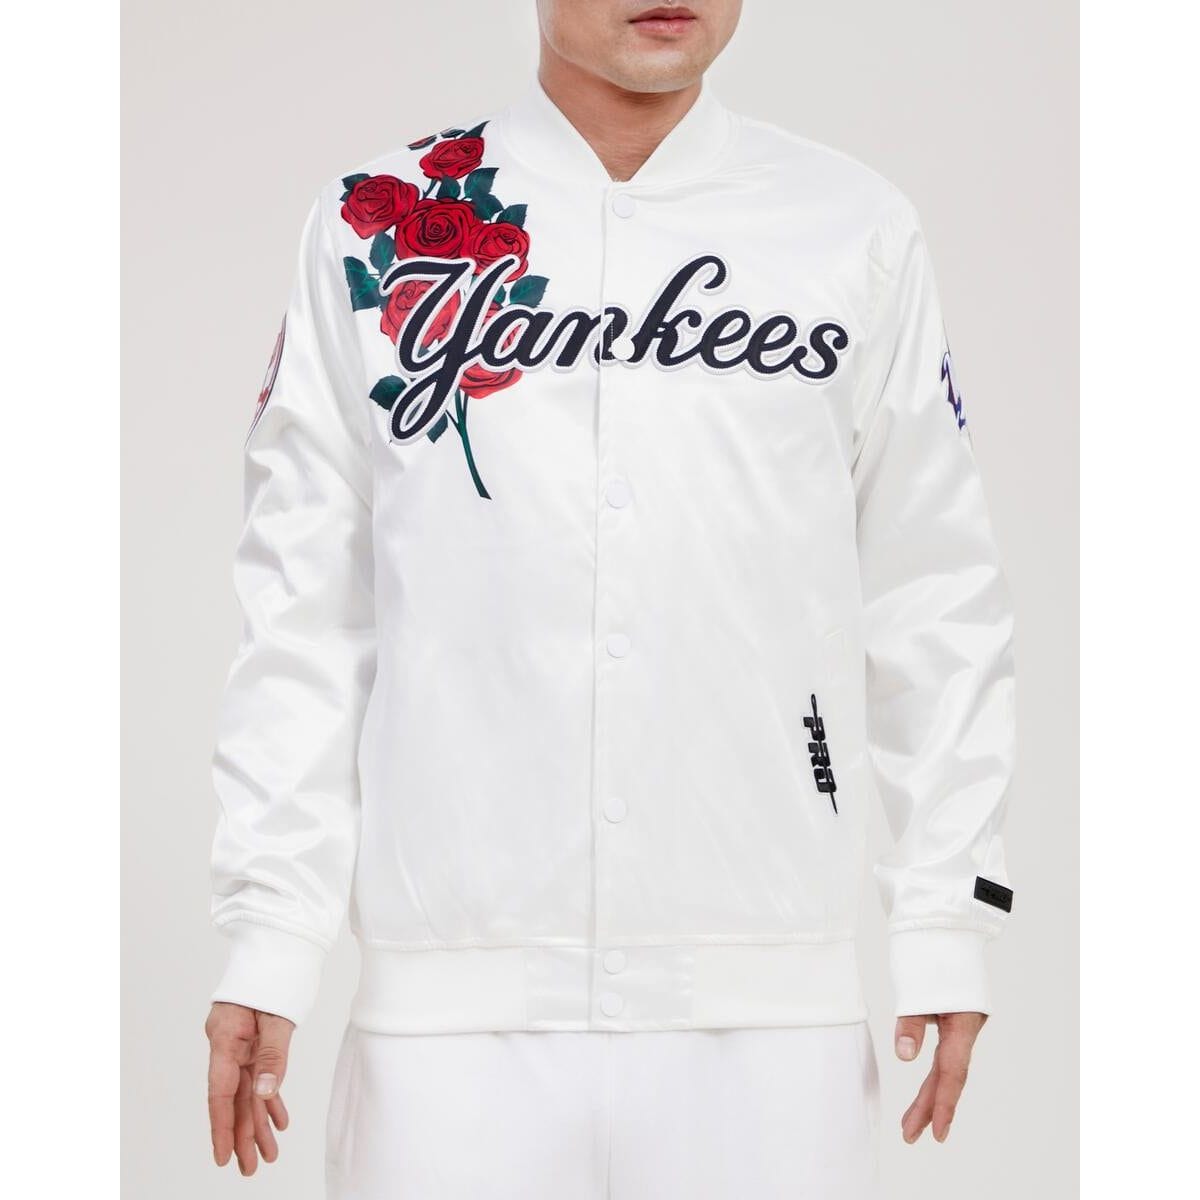 PRO STANDARD jacket S NEWYORK YANKEE'S WHITE ROSES JACKET